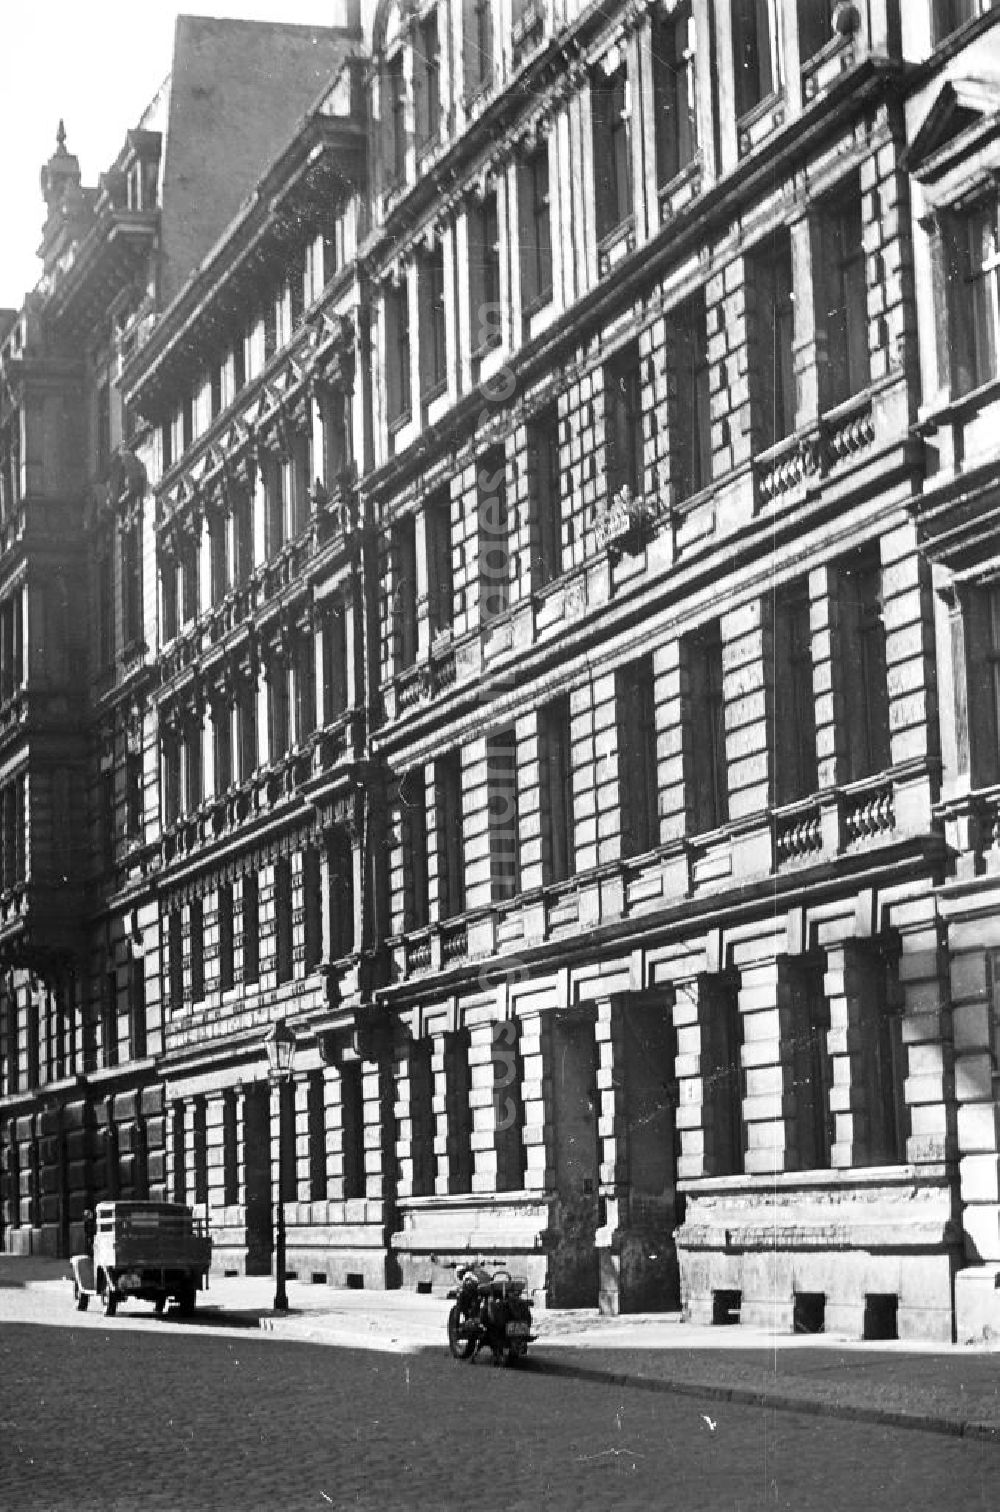 GDR picture archive: Magdeburg - Gründerzeit-Hausfassade in Magdeburg. Vor dem Haus steht ein Motorrad und ein Laster / LKW. Bestmögliche Qualität nach Vorlage!